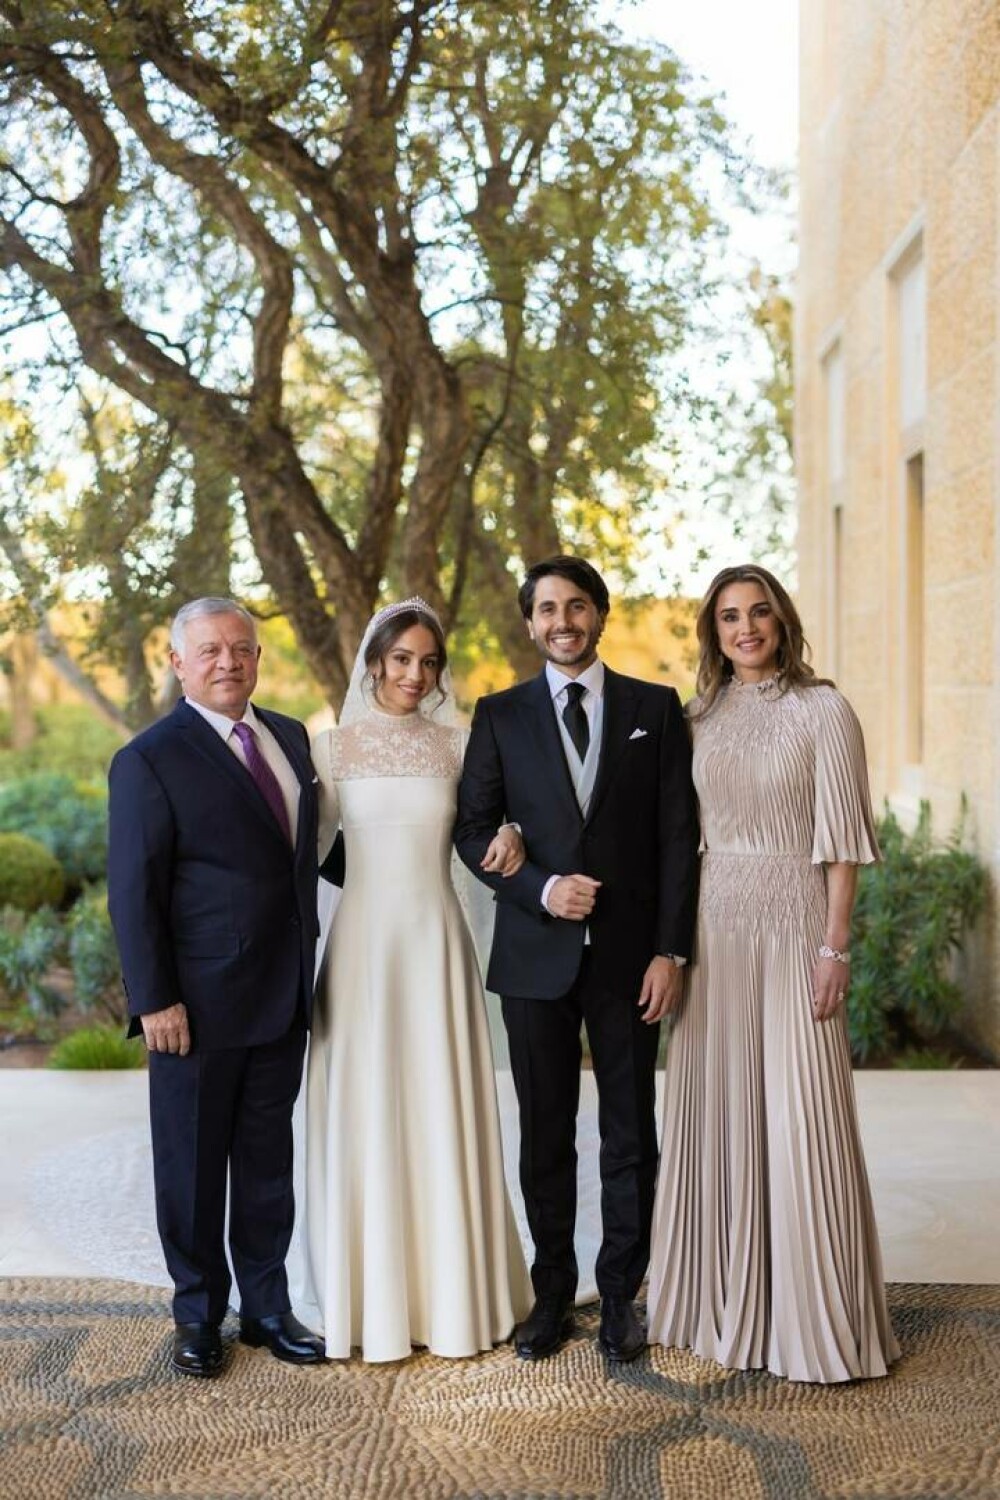 Prințesa Iman a Iordaniei s-a căsătorit cu un finanțist de origine greacă. Imaginile sunt spectaculoase GALERIE FOTO & VIDEO - Imaginea 4